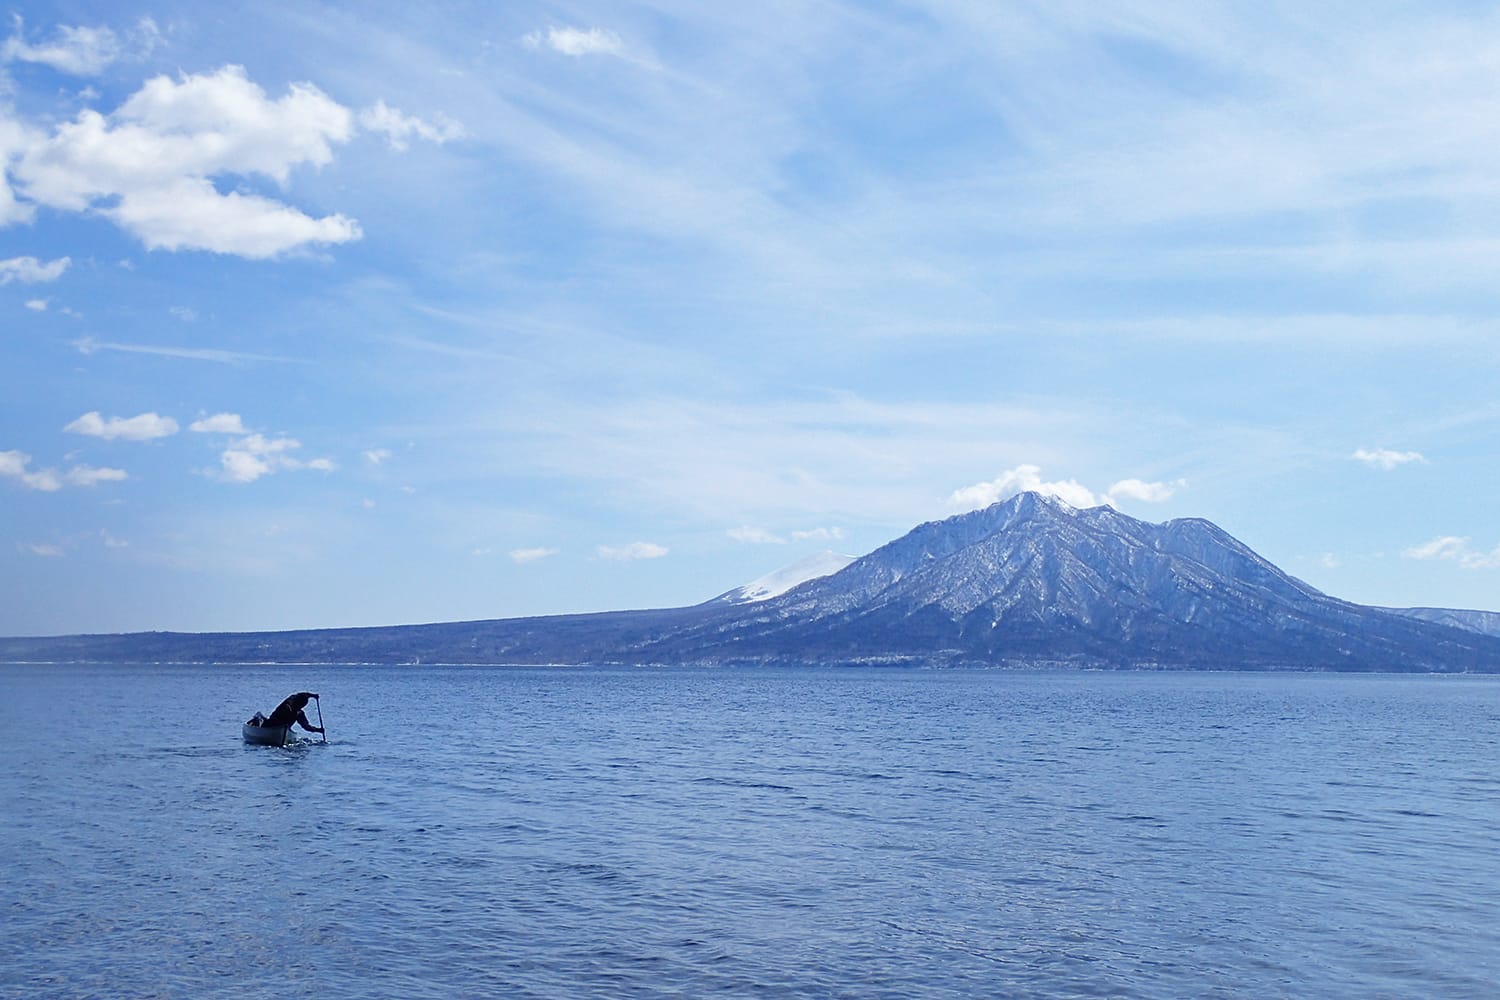 早春の支笏湖にて風不死岳に向かってカヌーを漕ぐ